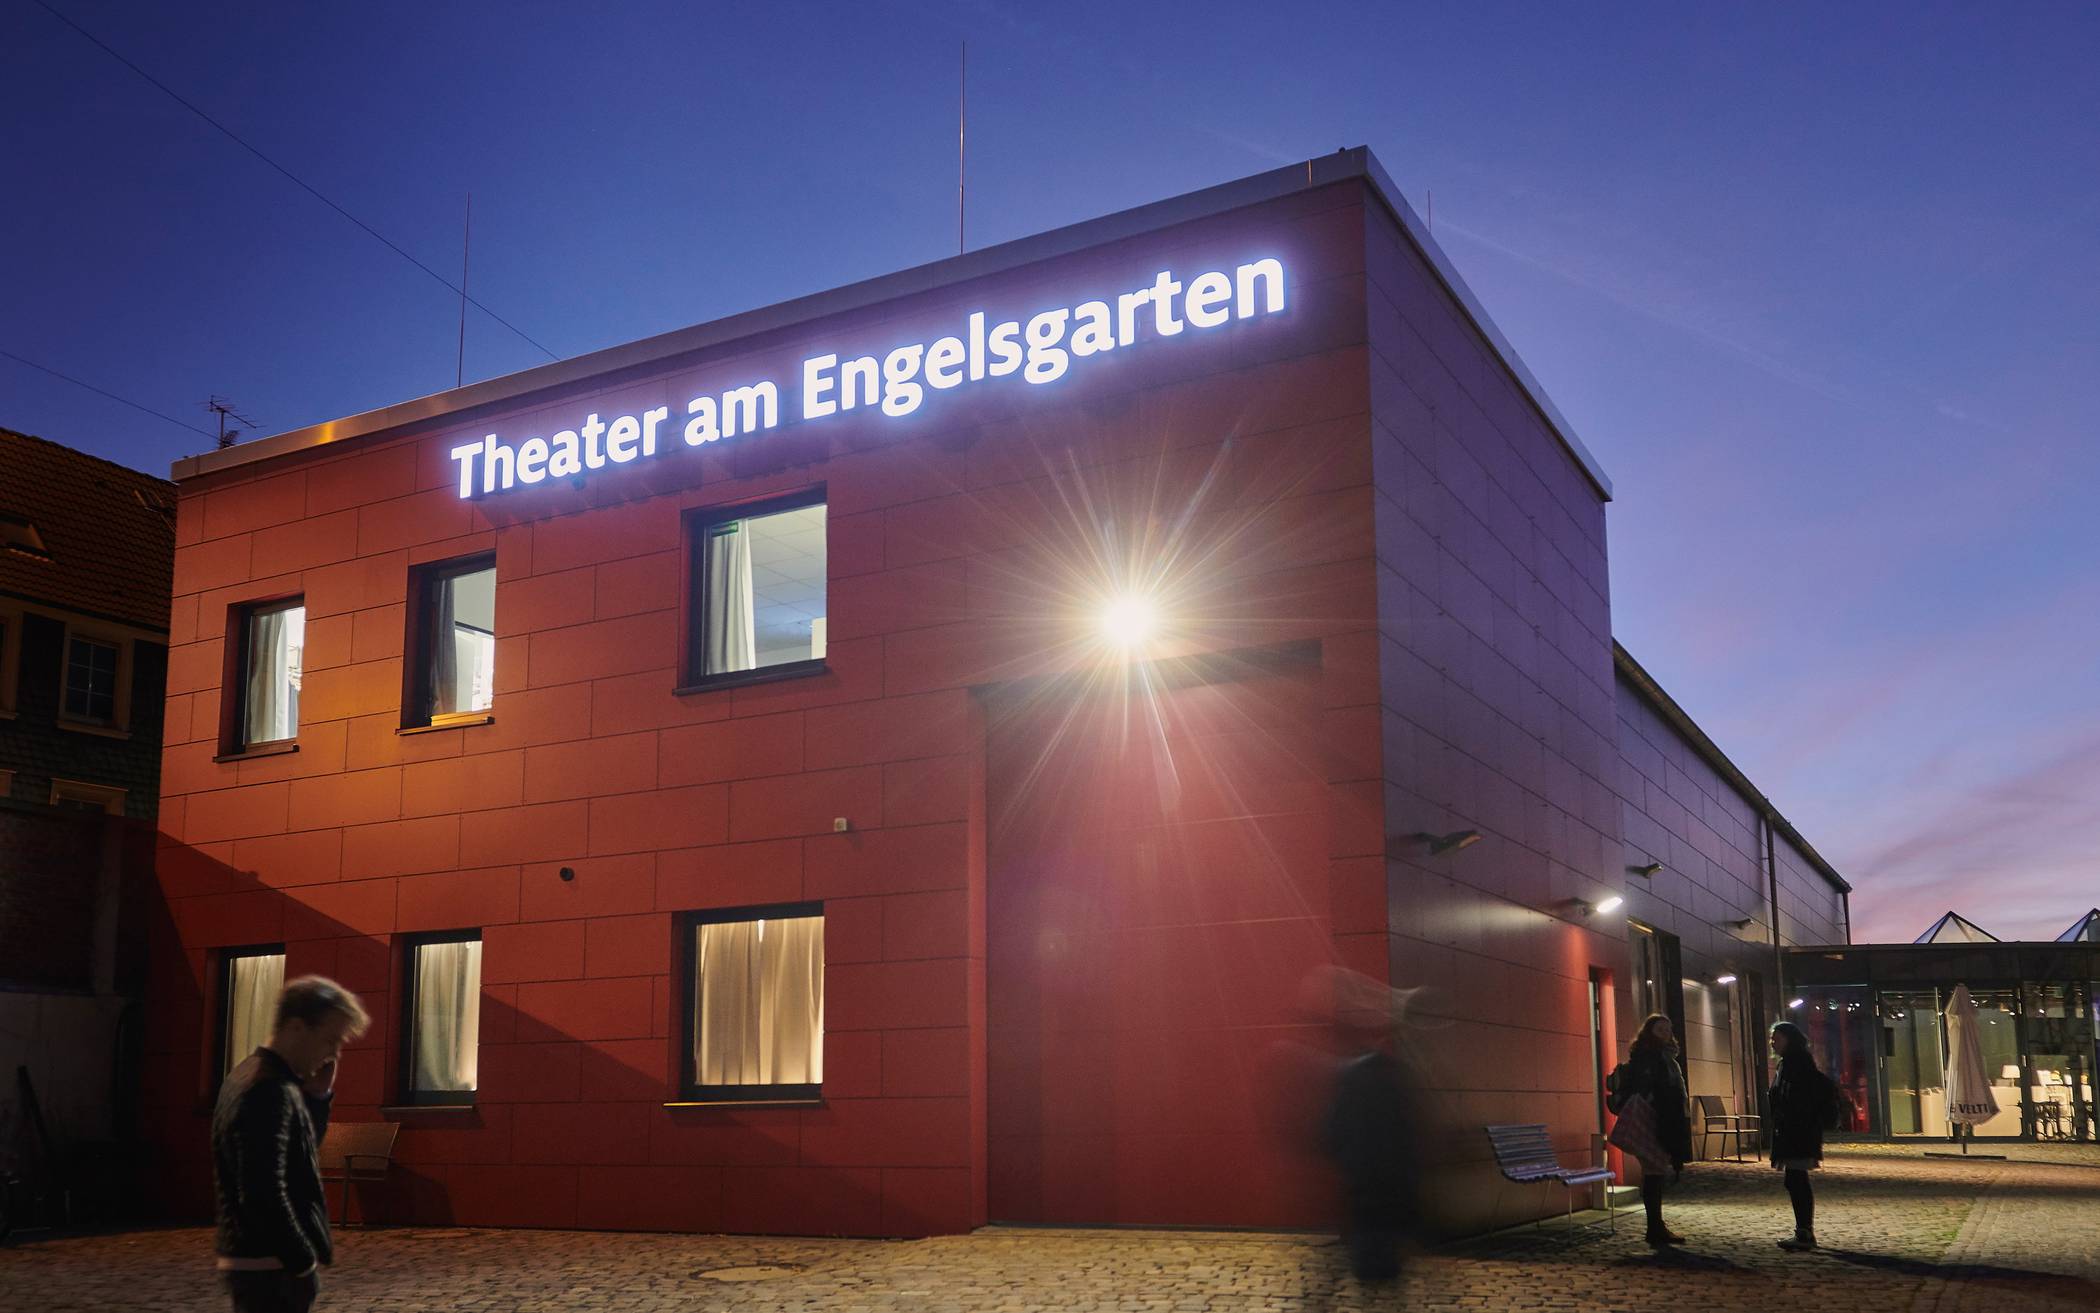  Zurzeit brennt im Theater am Engelsgarten kein Licht mehr. Aber im Netz sind die Bühnen, die freie Szene und viele andere Kulturanbieter überaus facettenreich präsent.  